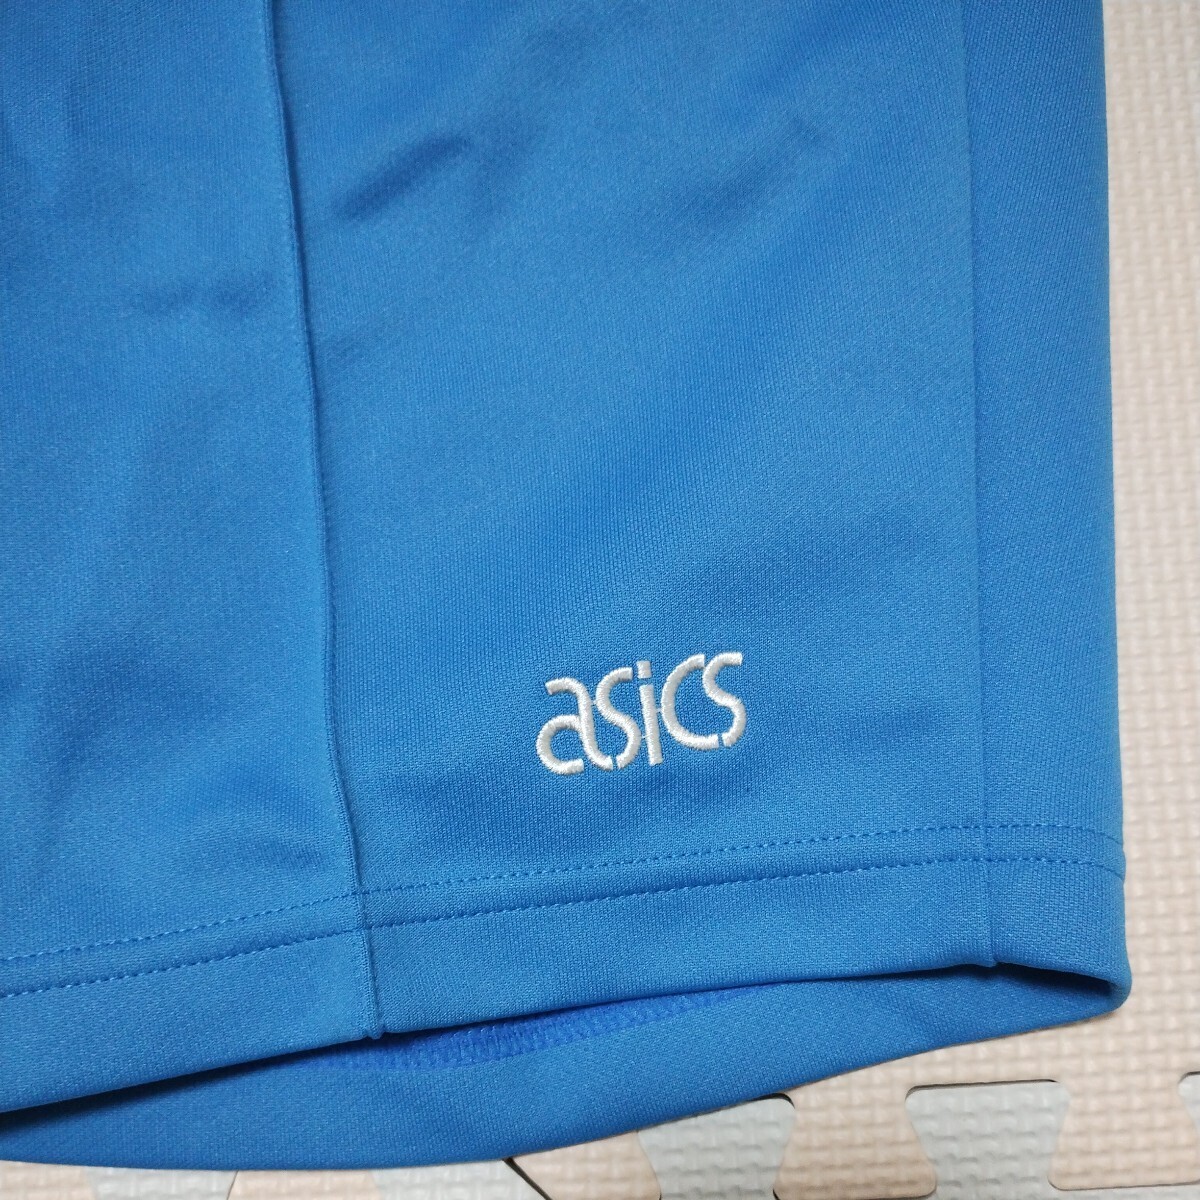  Asics school physical training for semi shorts AG-803 L size gym uniform / gym uniform 